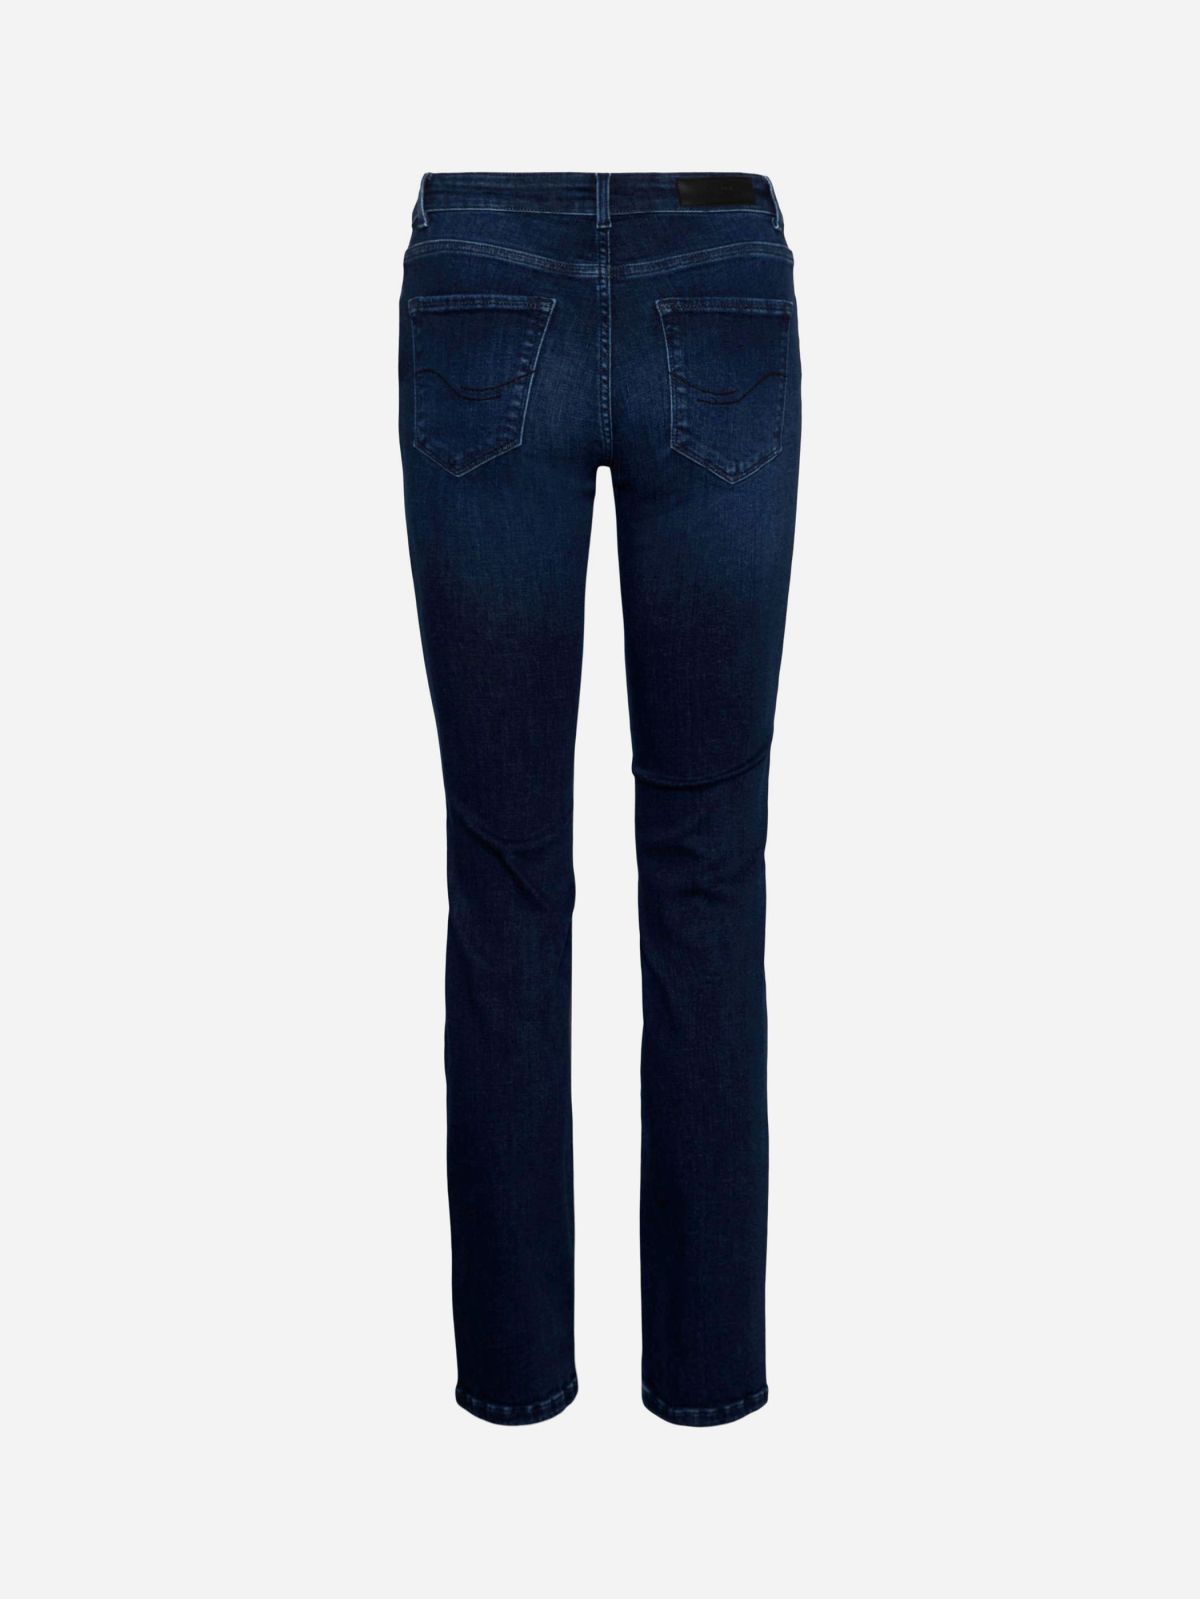  מכנסיים ג'ינס ארוכים בגזרת סקיני של VERO MODA